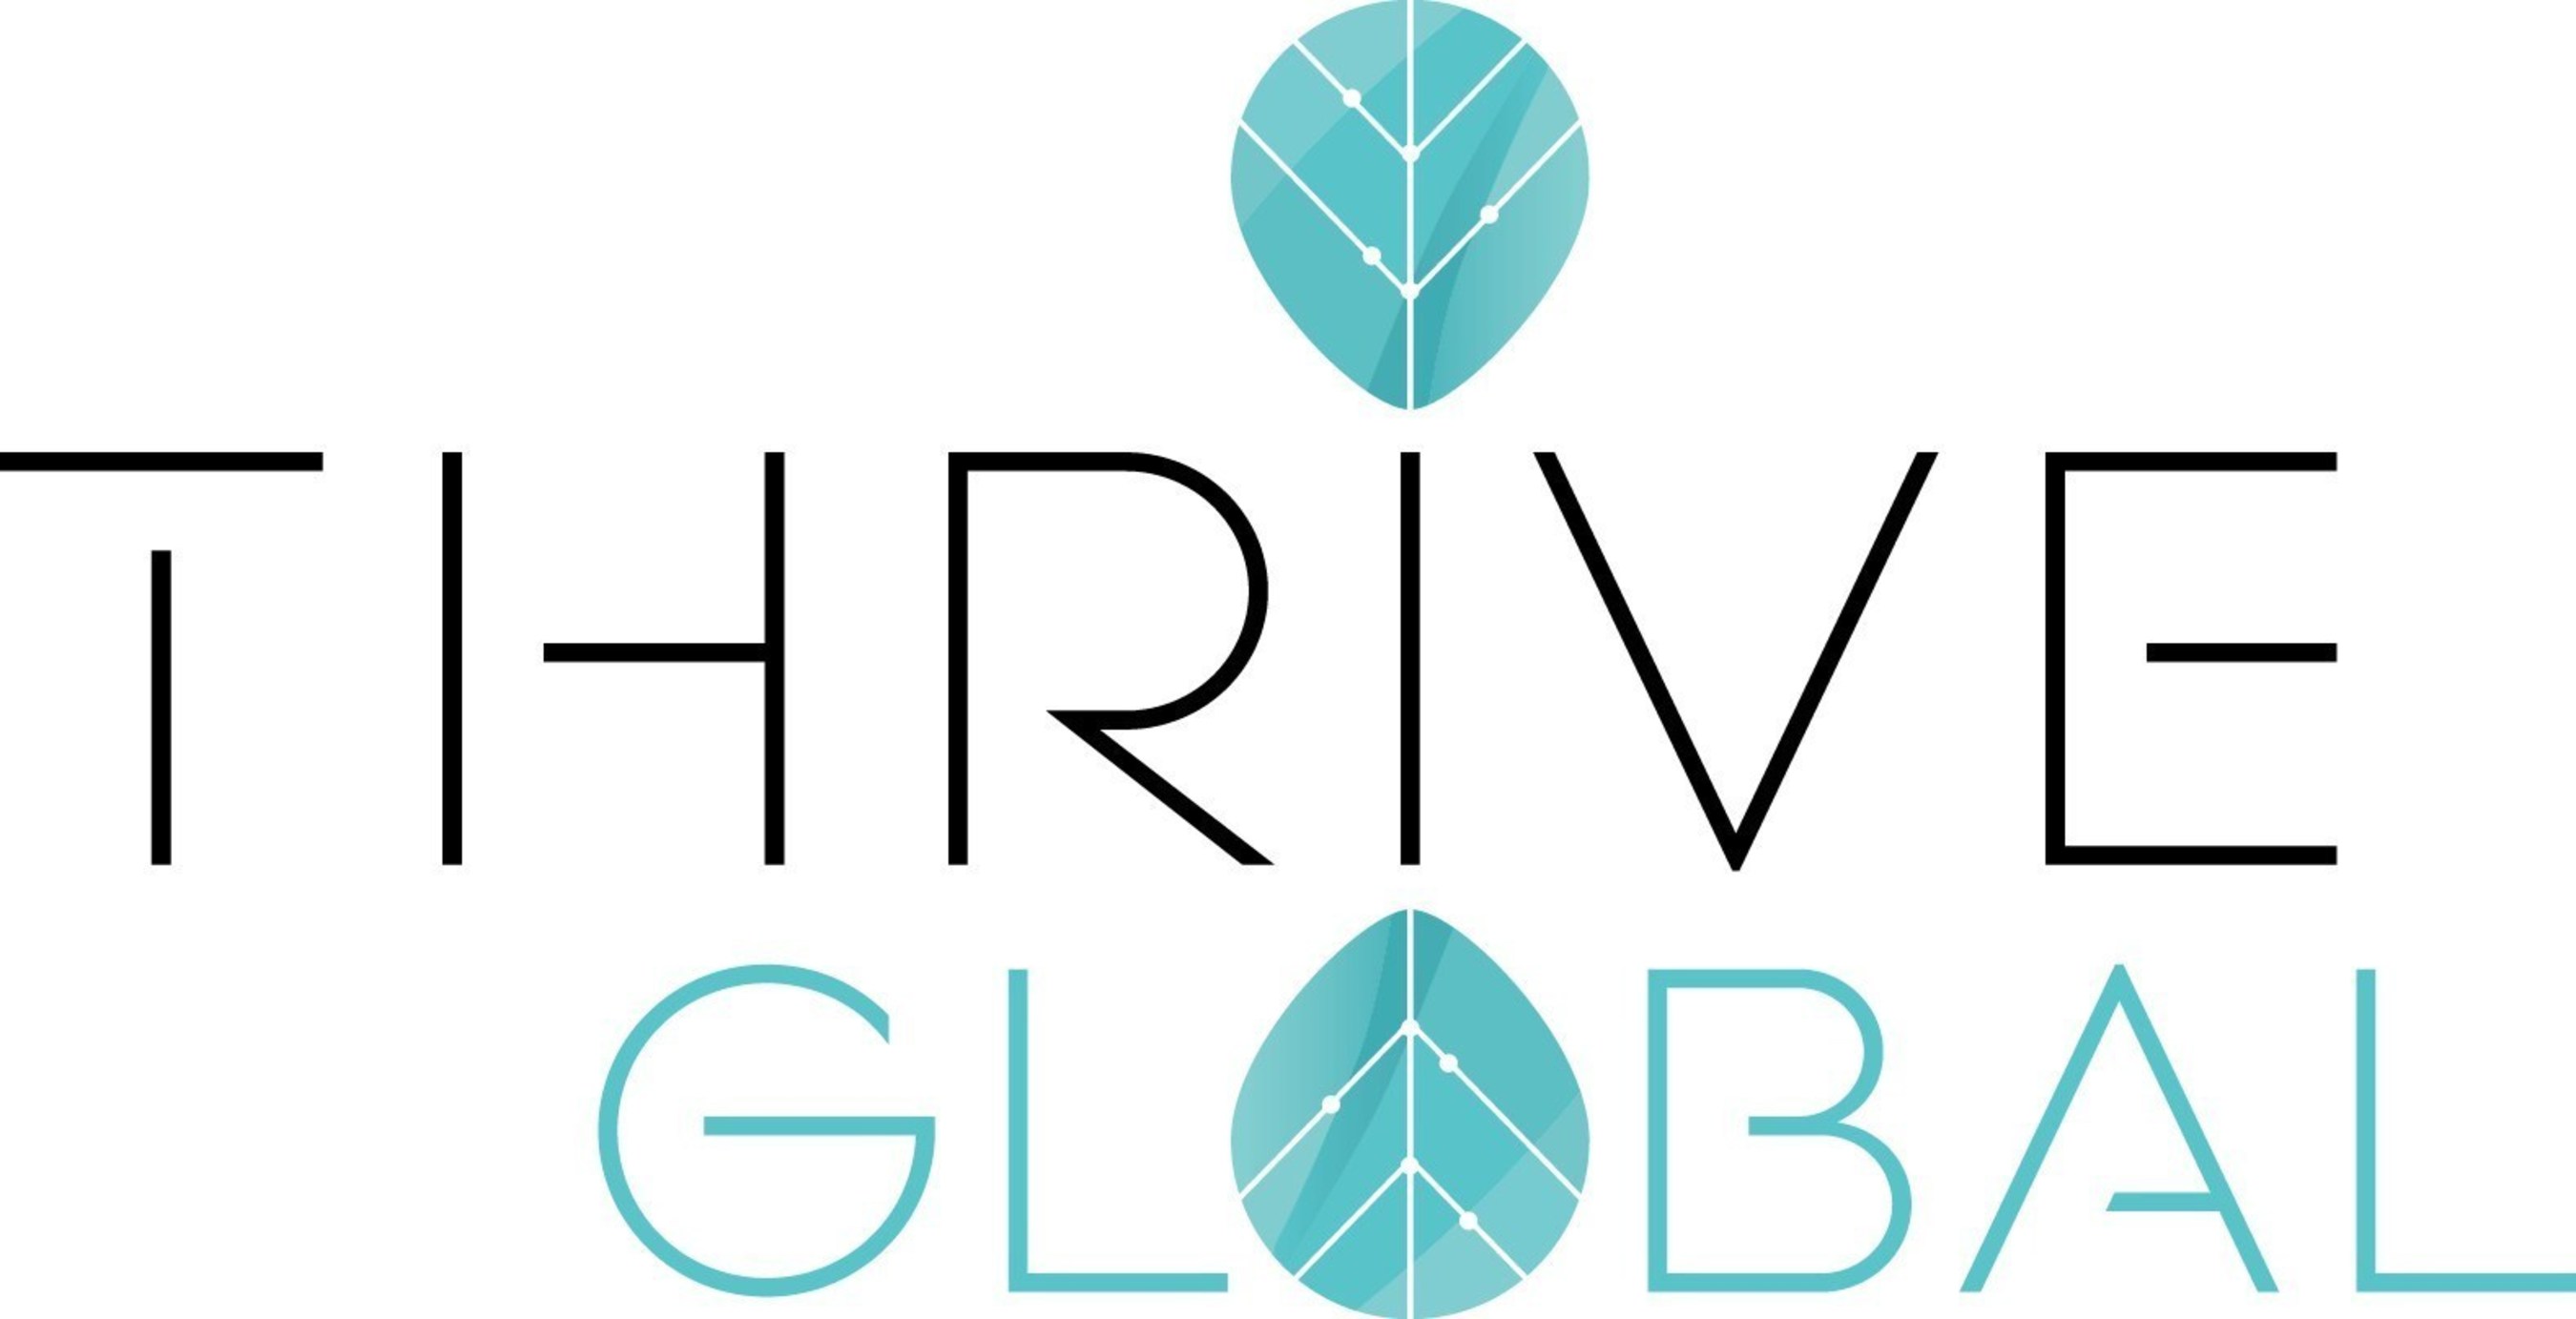 Thrive-Global-Logo